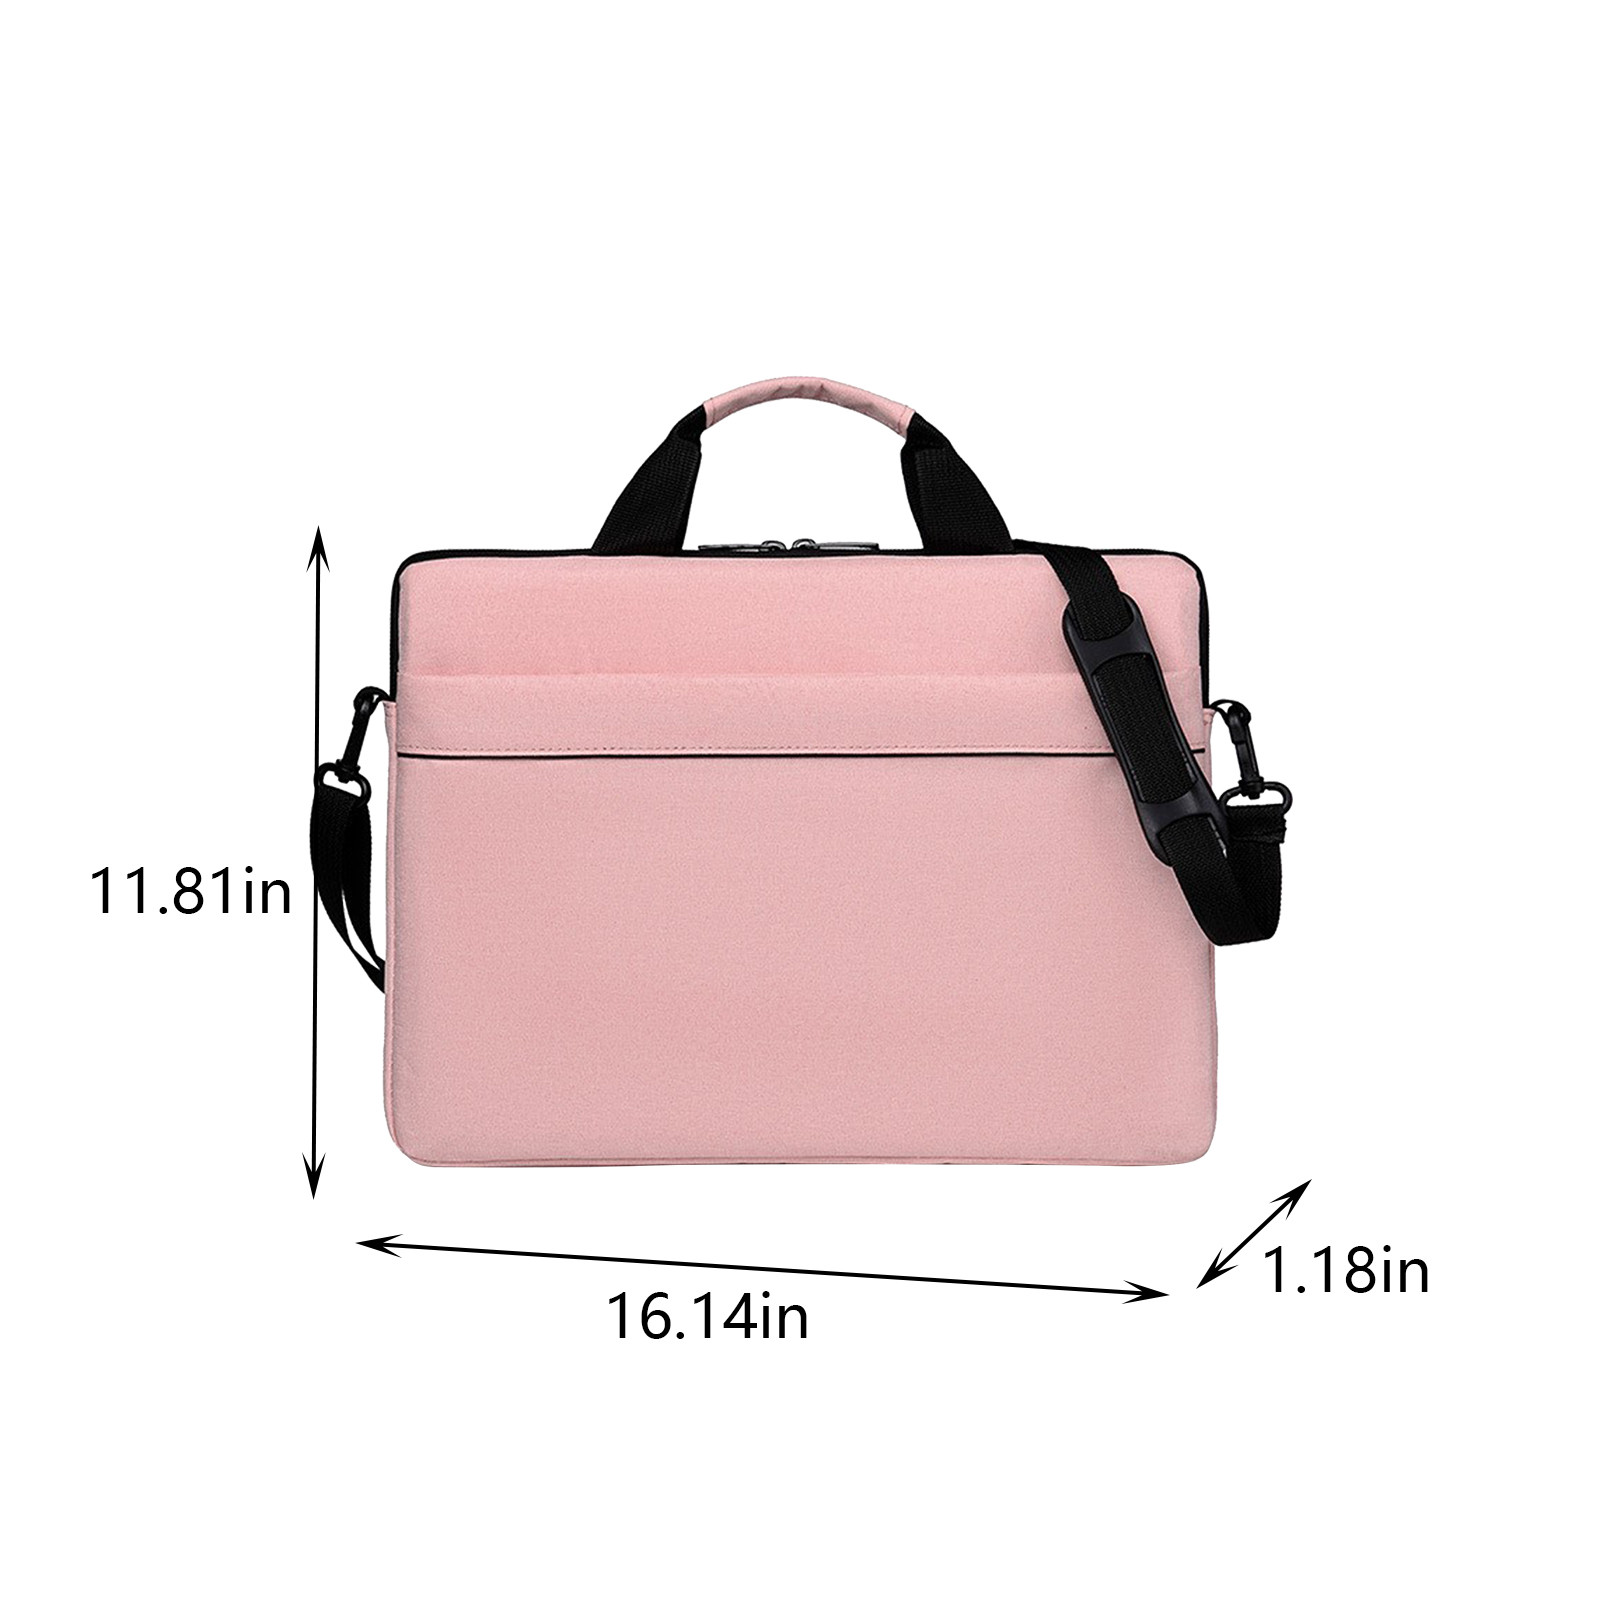 Wovilon Laptop Bag 15.6 Inch Briefcase Shoulder Bag Water Repellent Laptop Bag Satchel Tablet Bussiness Carrying Handbag Laptop Sleeve for Women and Men-Pink - image 3 of 7